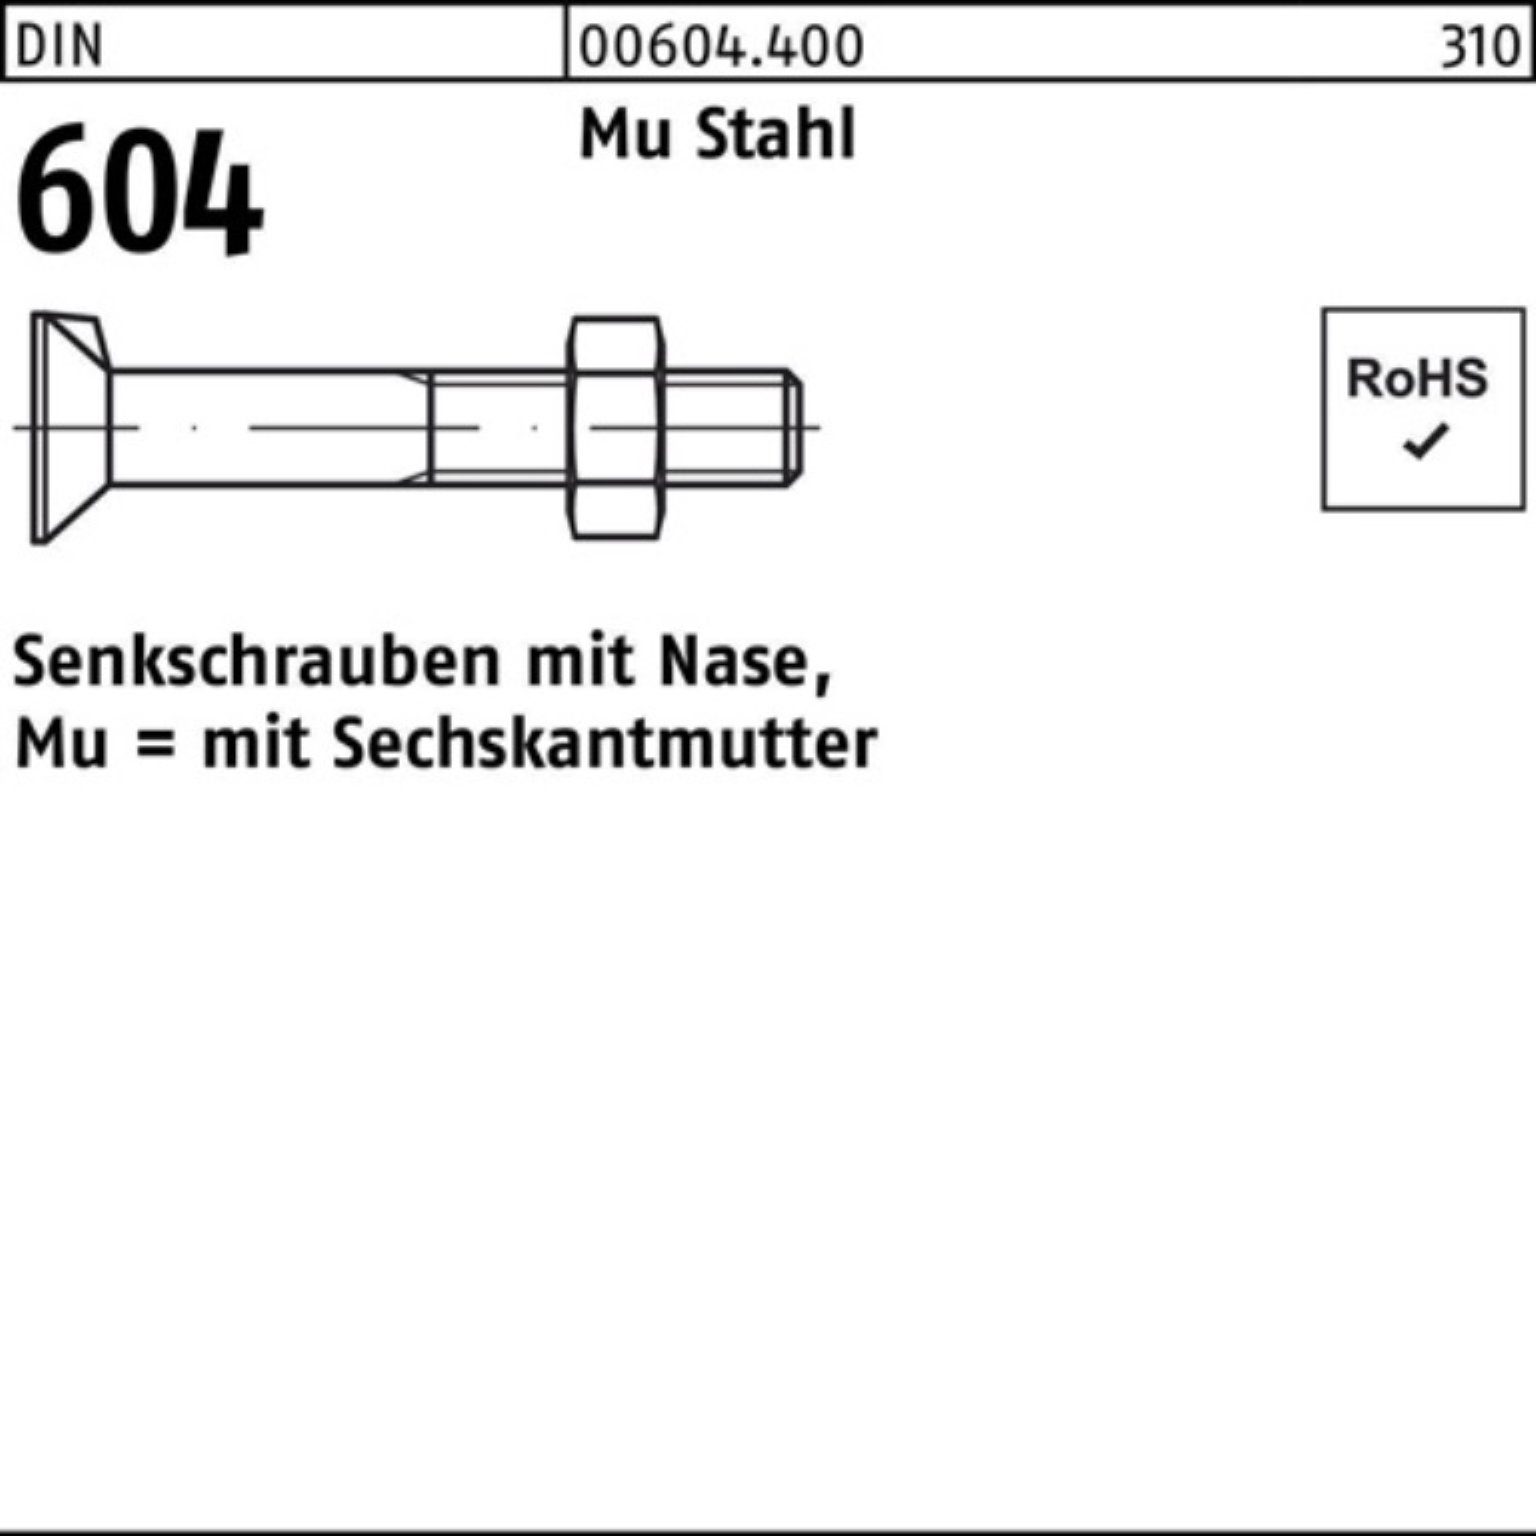 Reyher Senkschraube 100er Pack Senkschraube DIN 604 Nase/6-ktmutter M20x 90 Mu Stahl 4.6 2